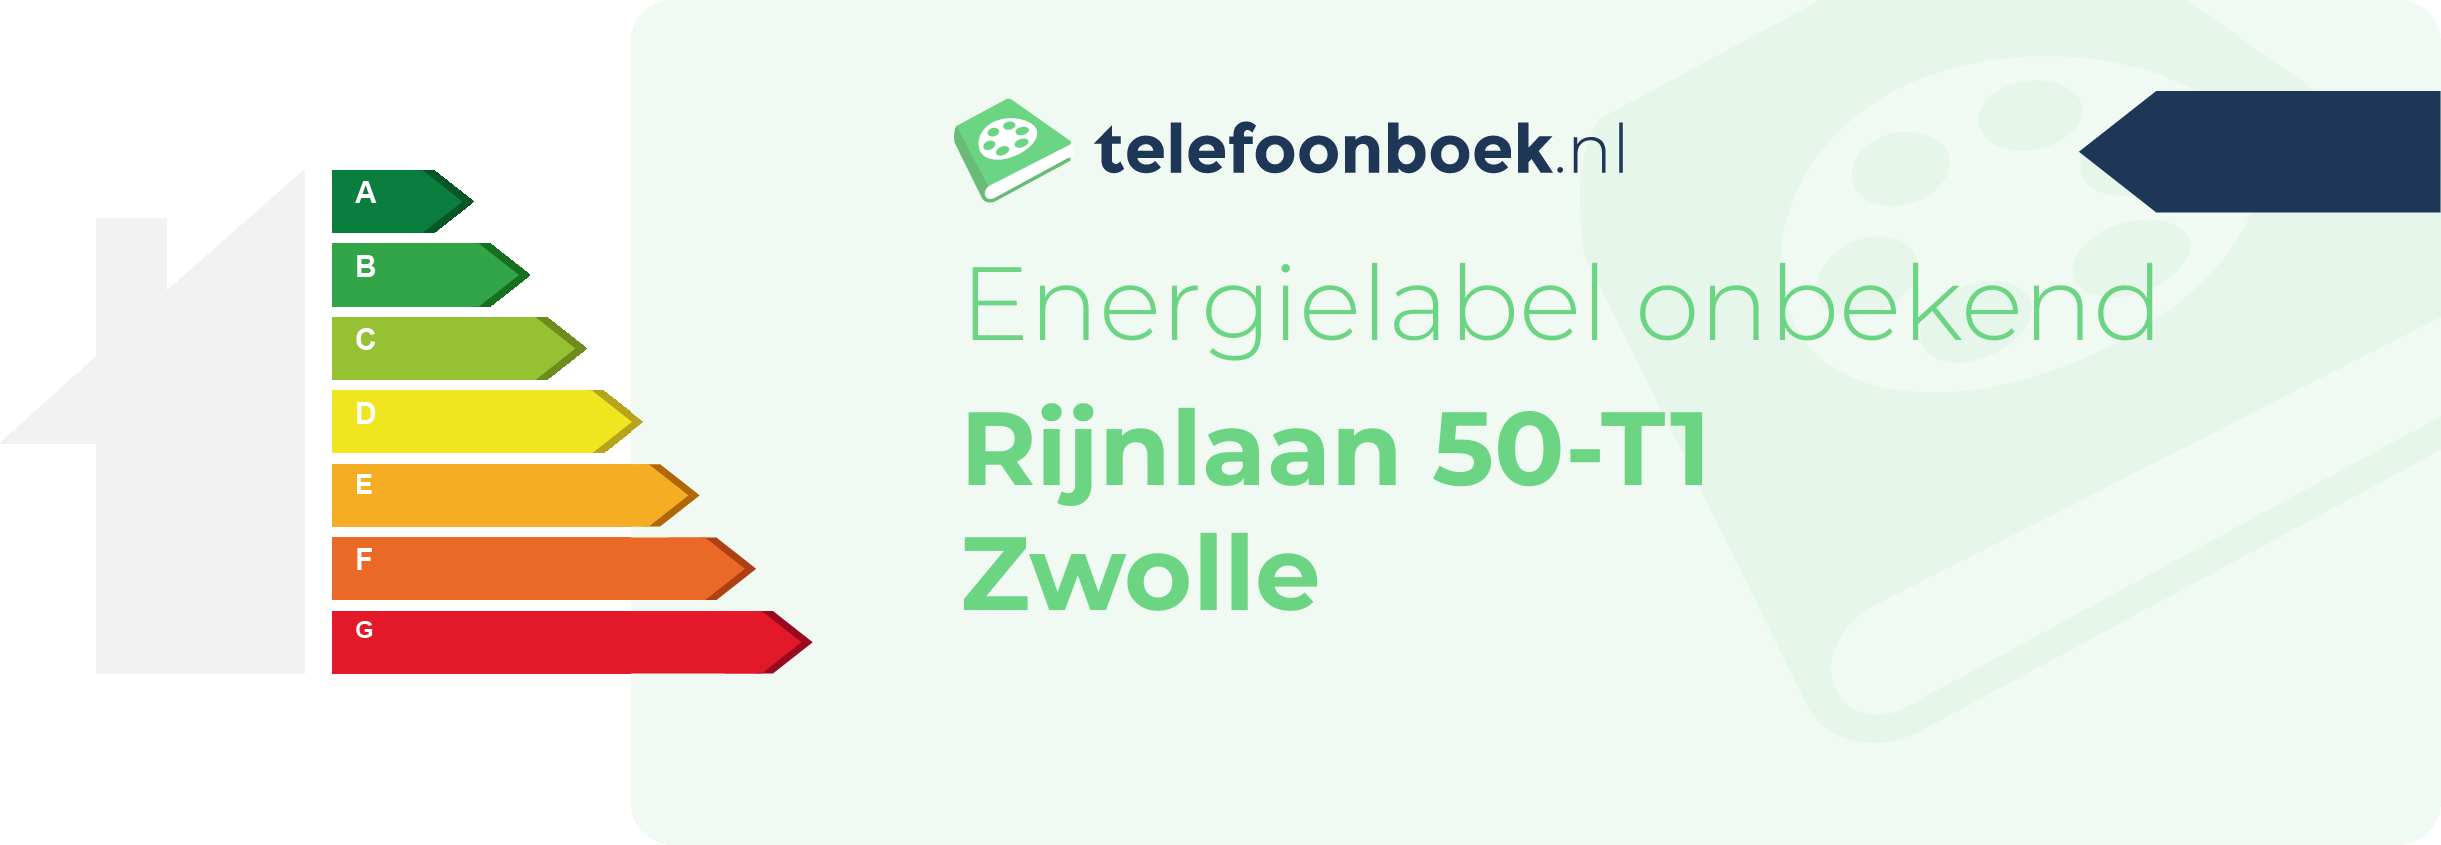 Energielabel Rijnlaan 50-T1 Zwolle